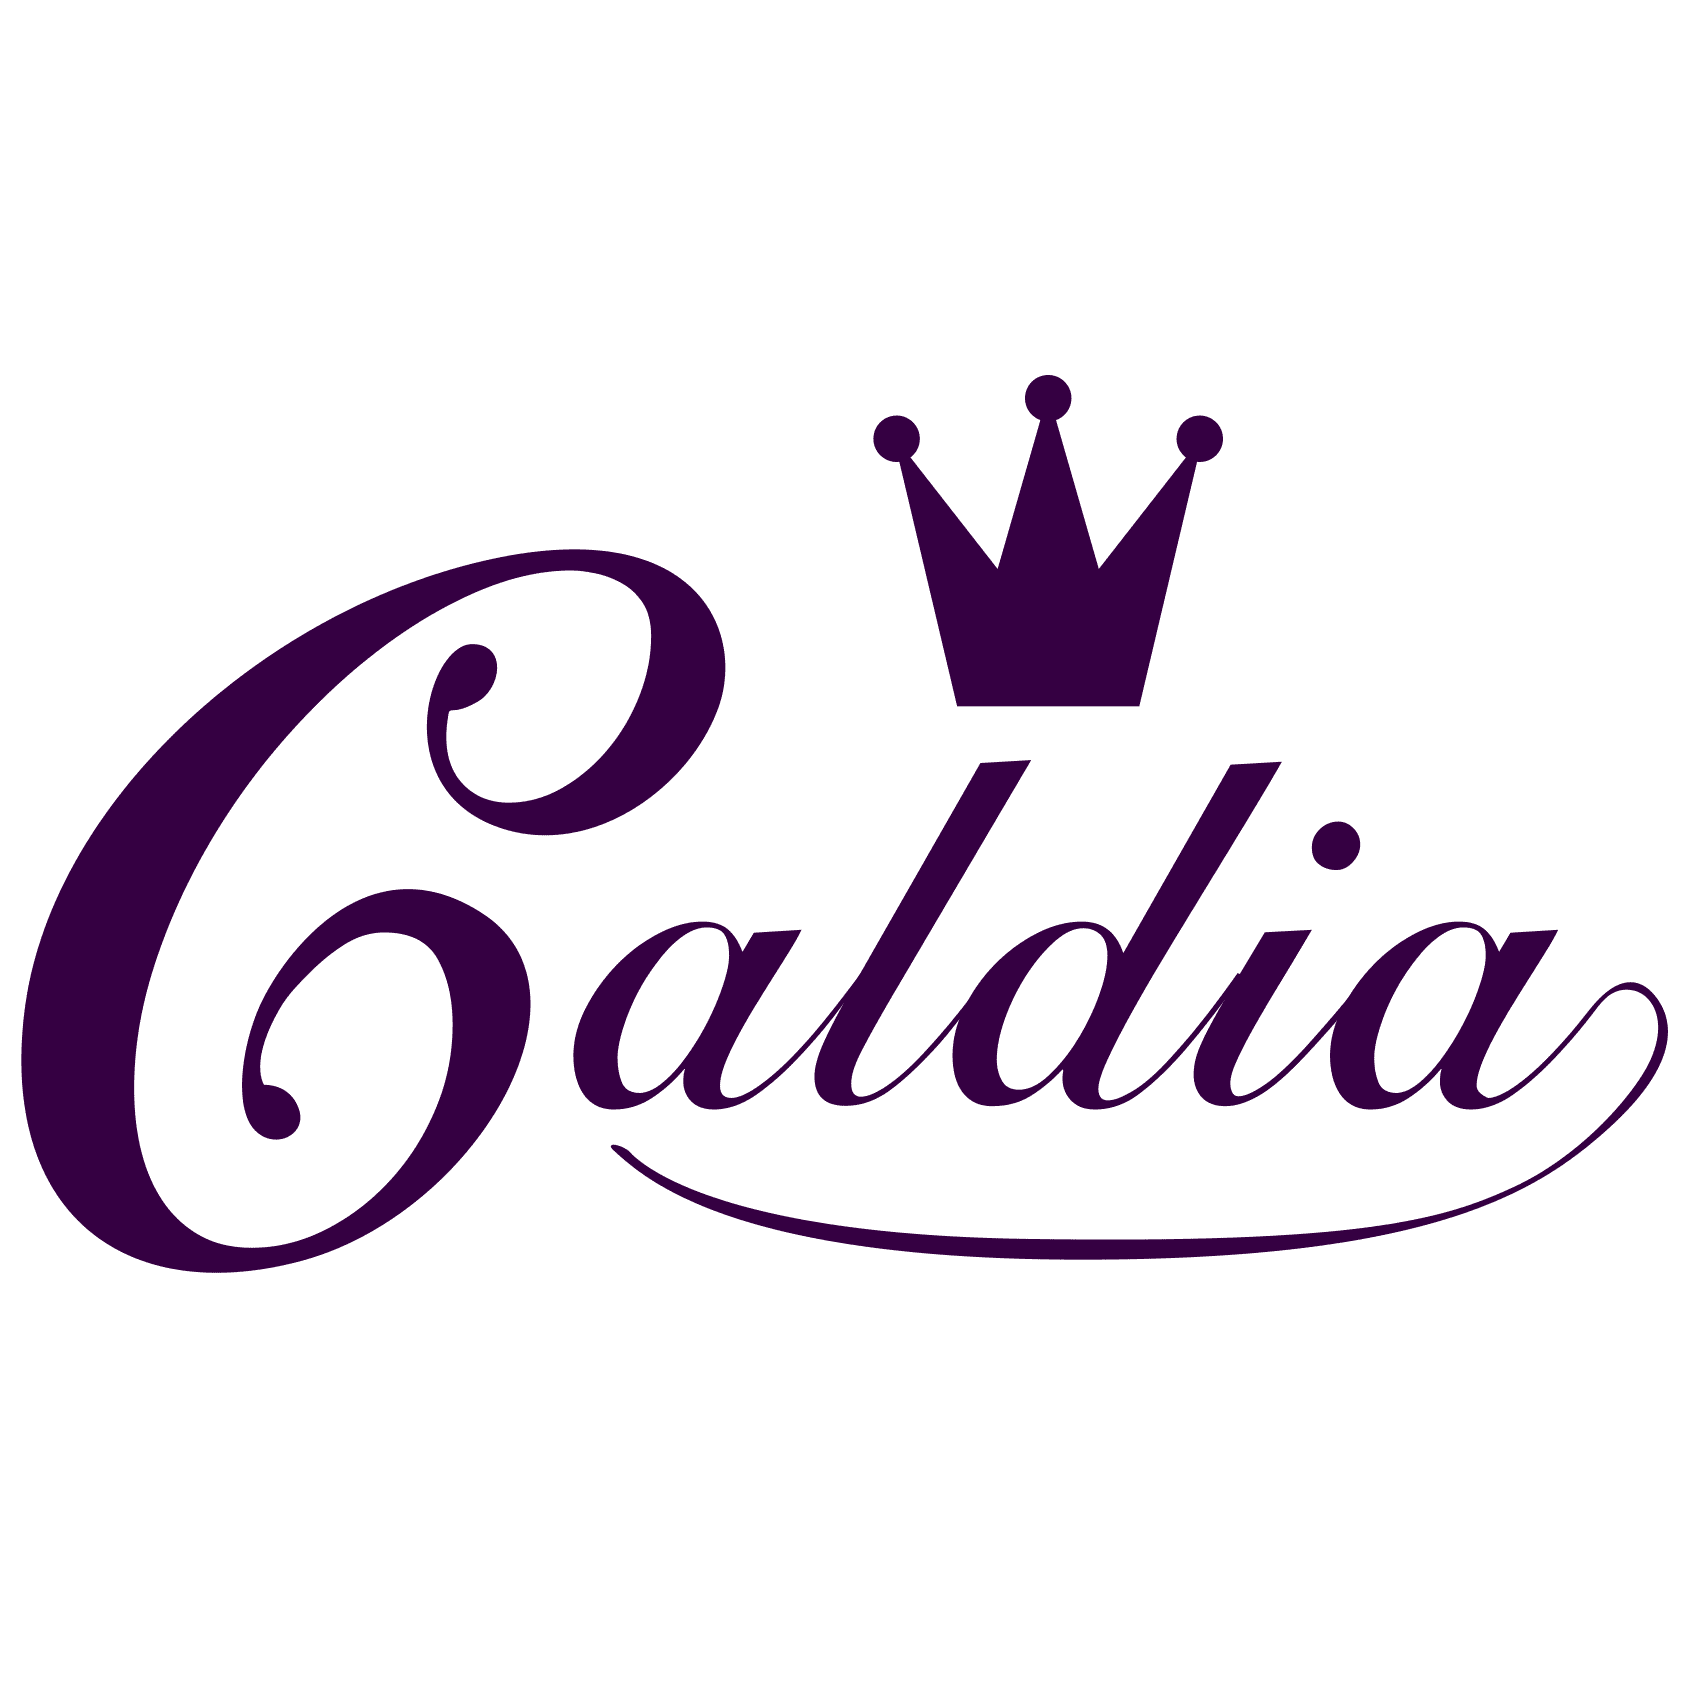 Caldia(カルディア) ブランドロゴ